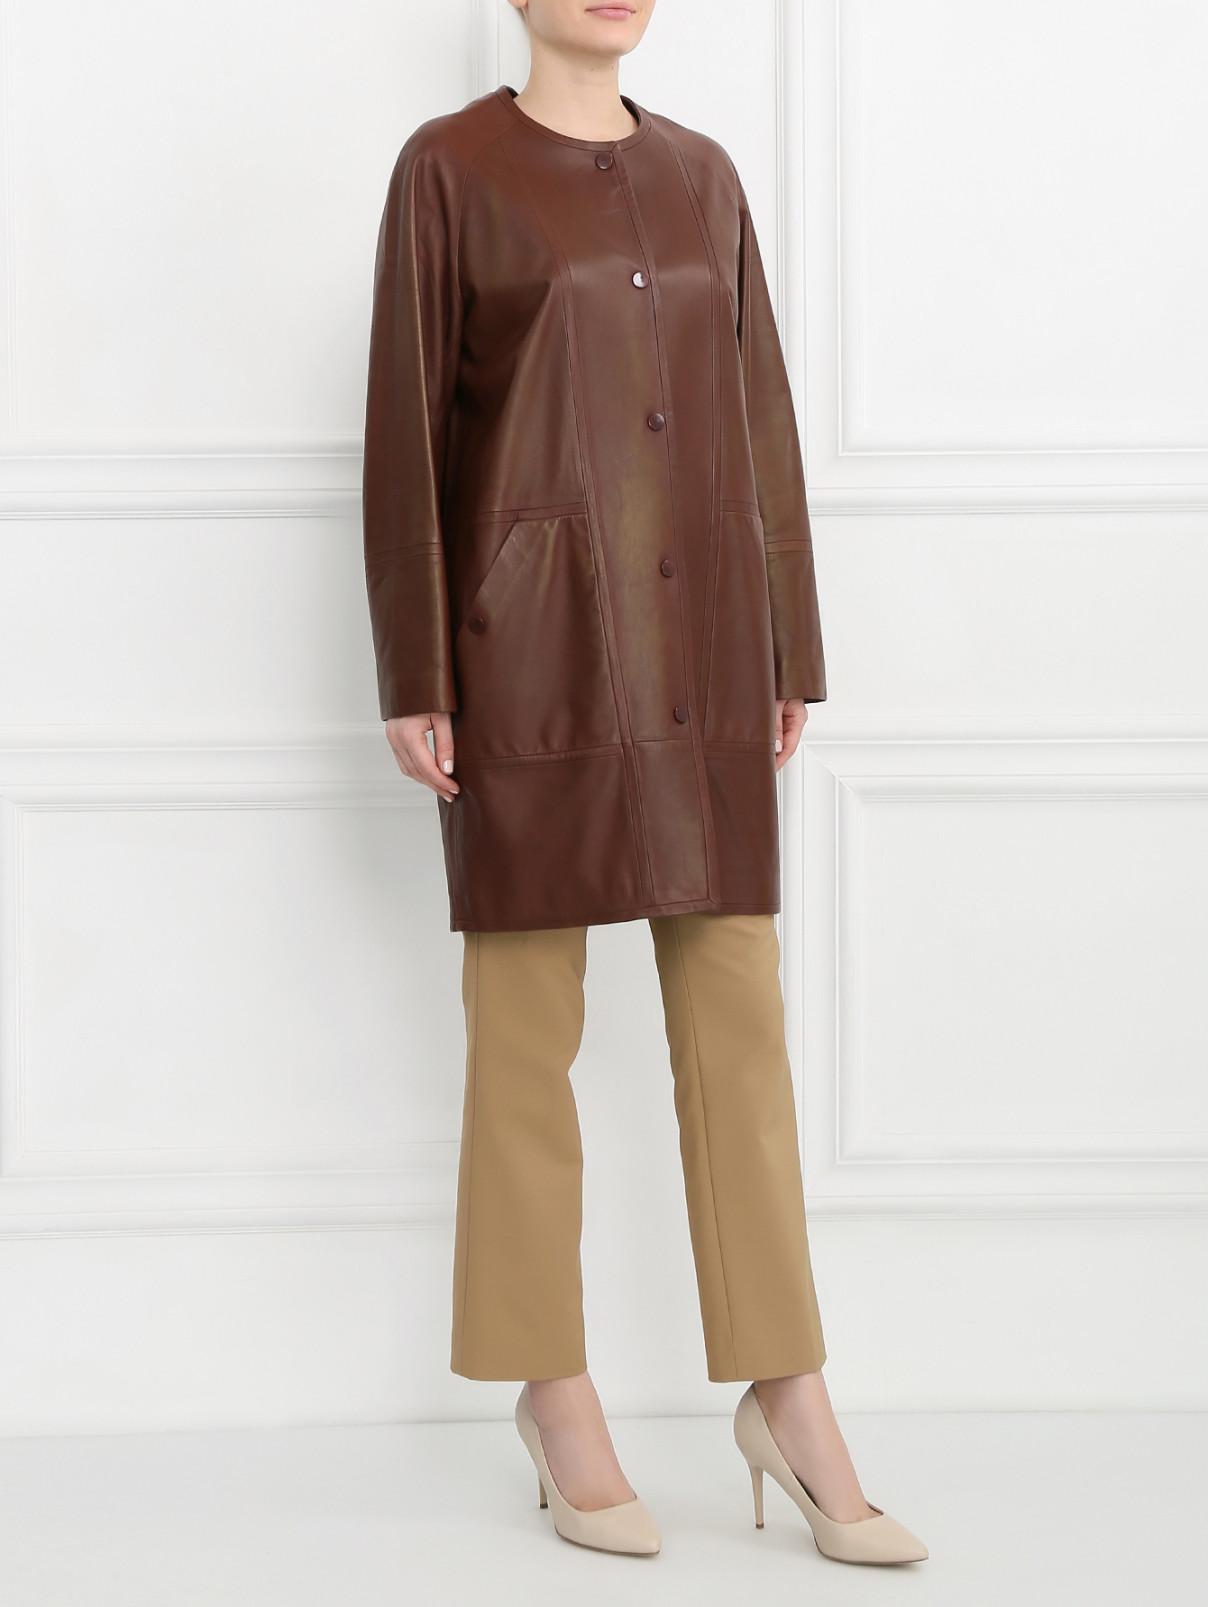 Пальто из кожи Yves Salomon  –  Модель Общий вид  – Цвет:  Коричневый